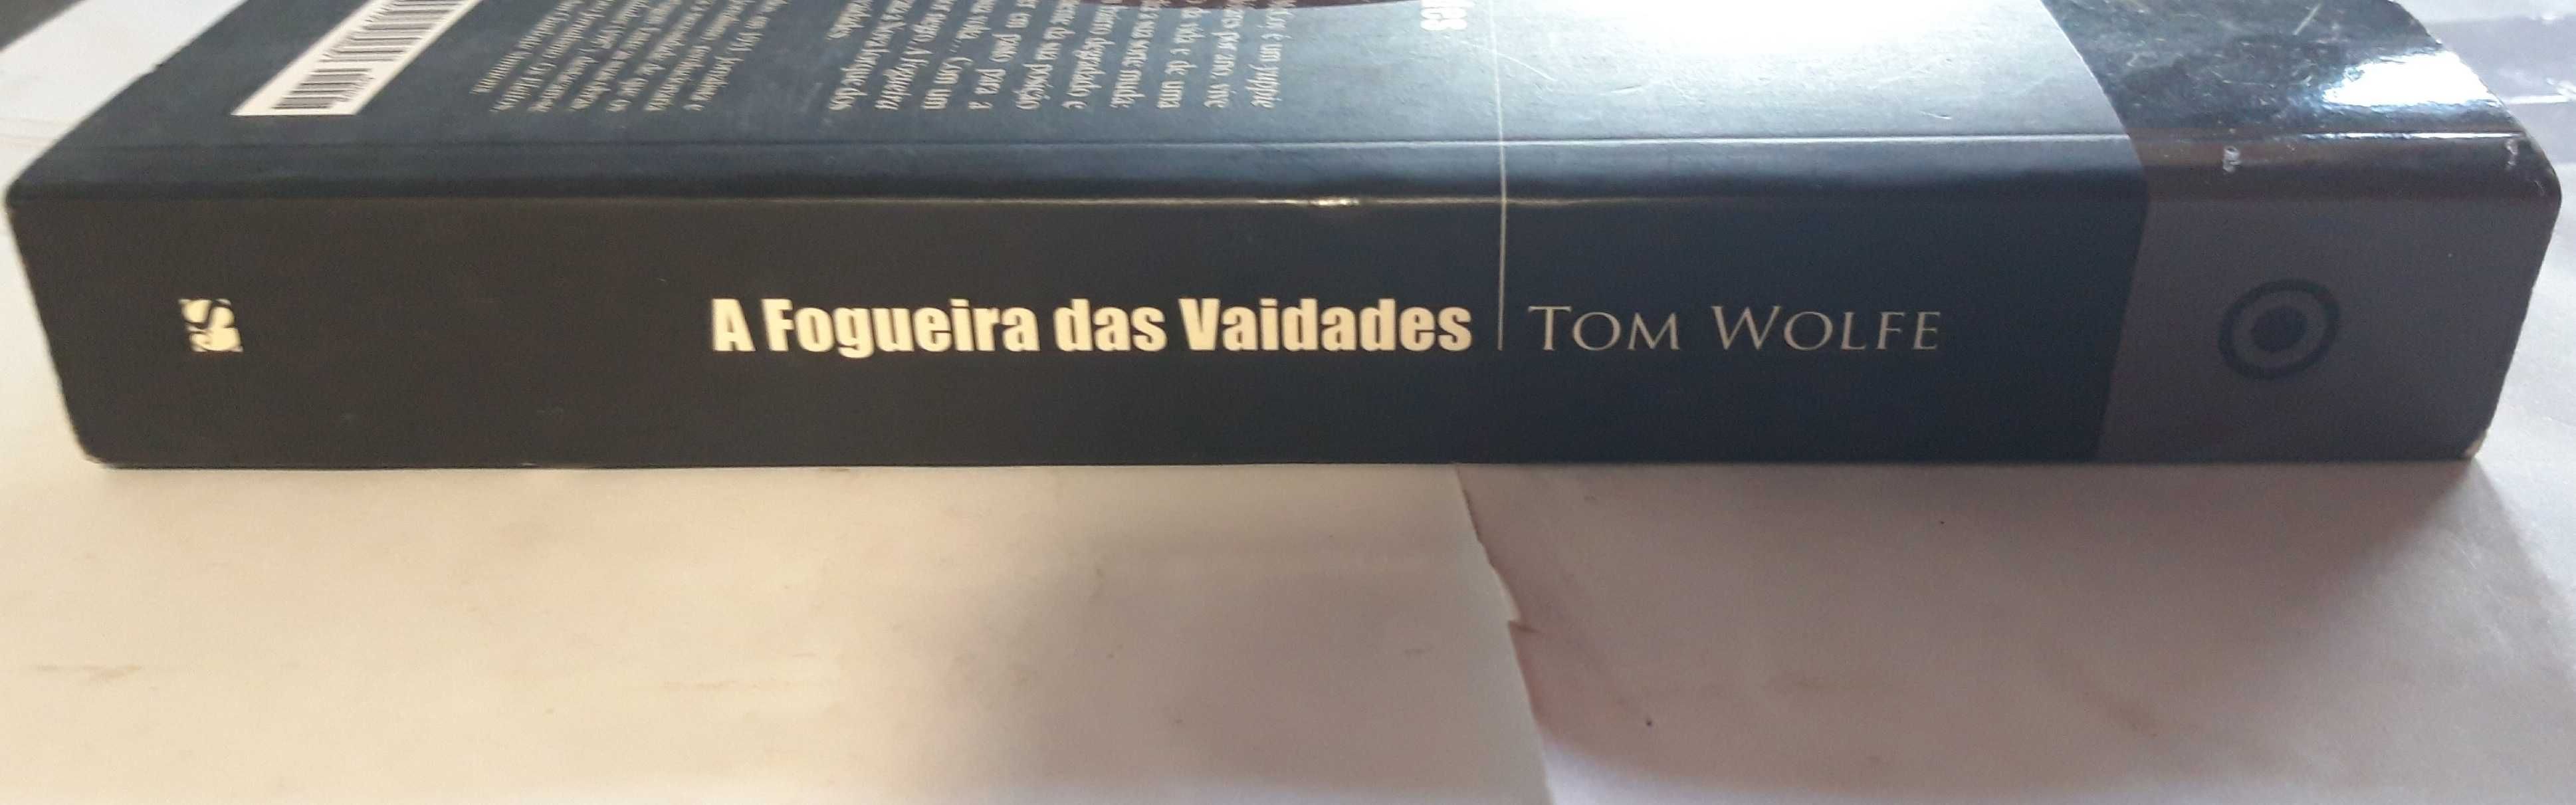 Livro Ref Par 2 - Tom Wolfe - A Fogueira das Vaidades